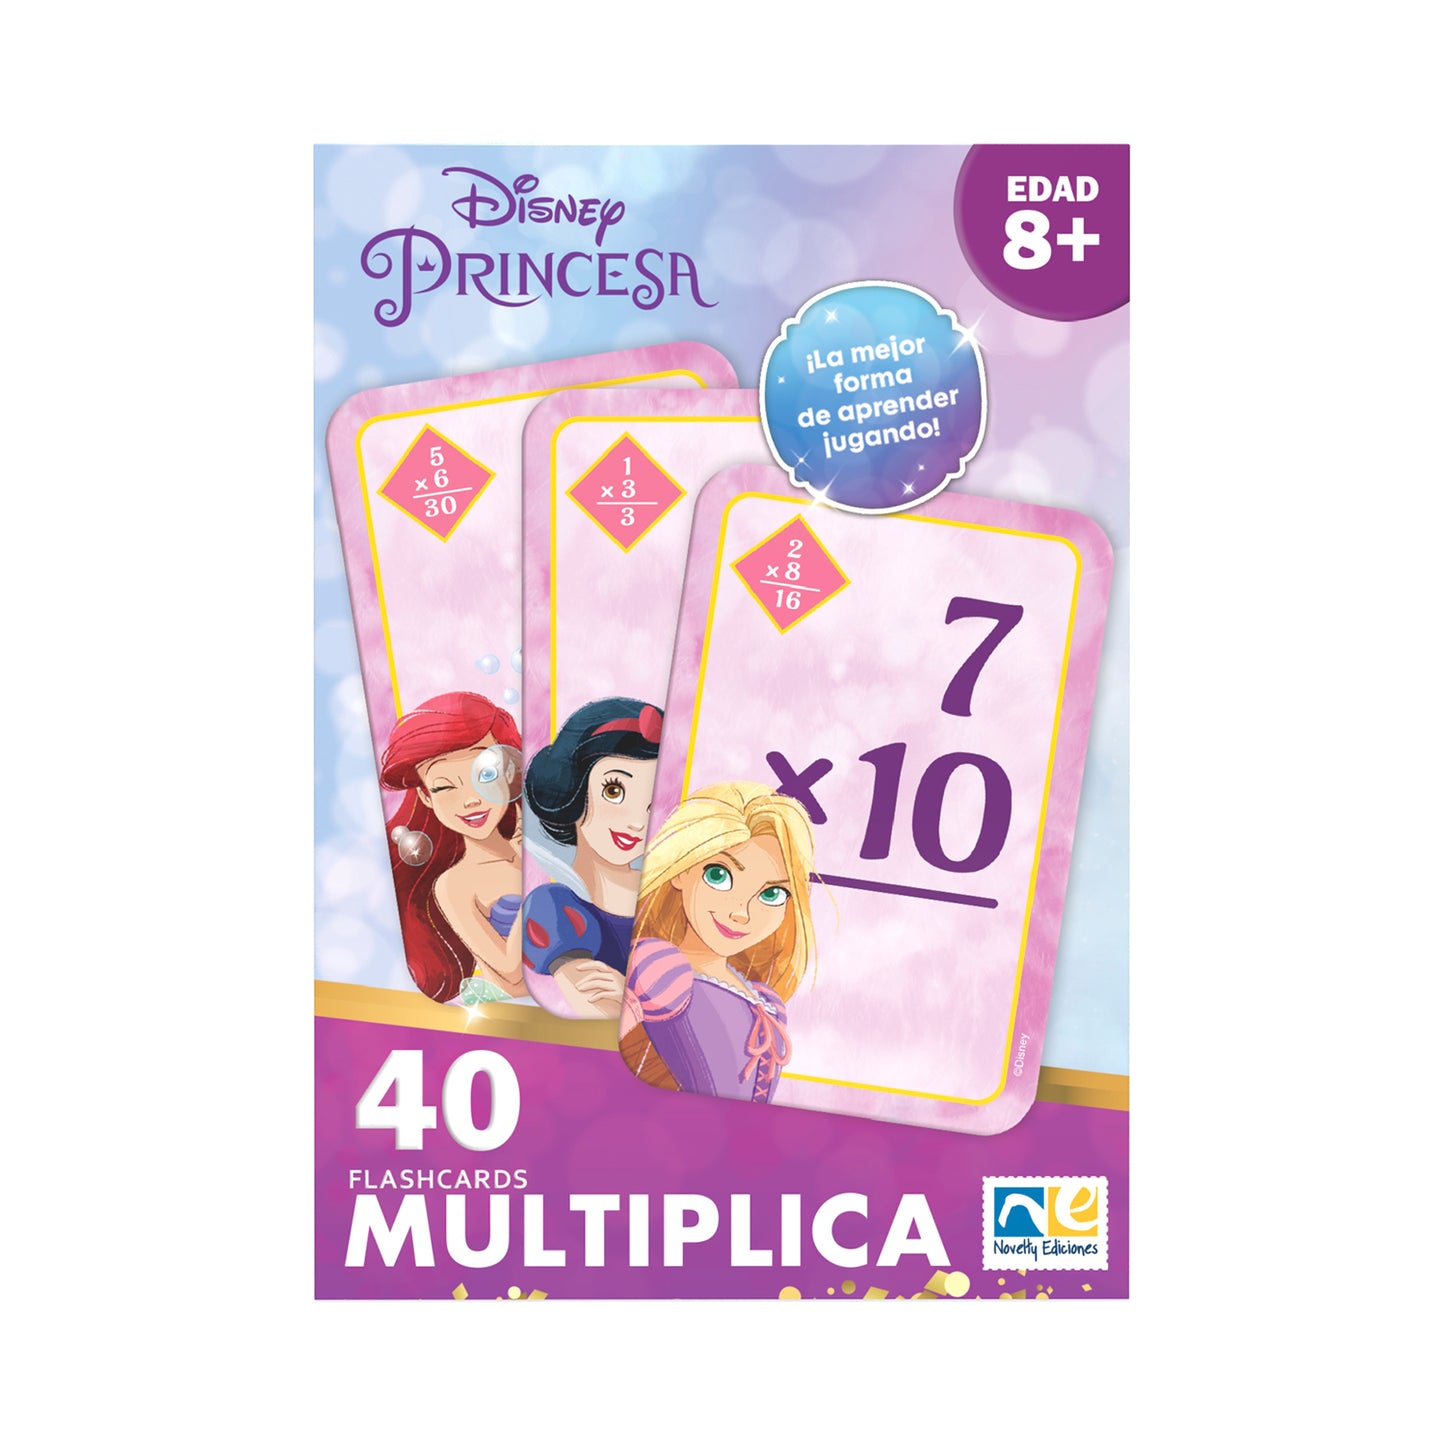 Flashcards Multiplicaciones Disney Princesas